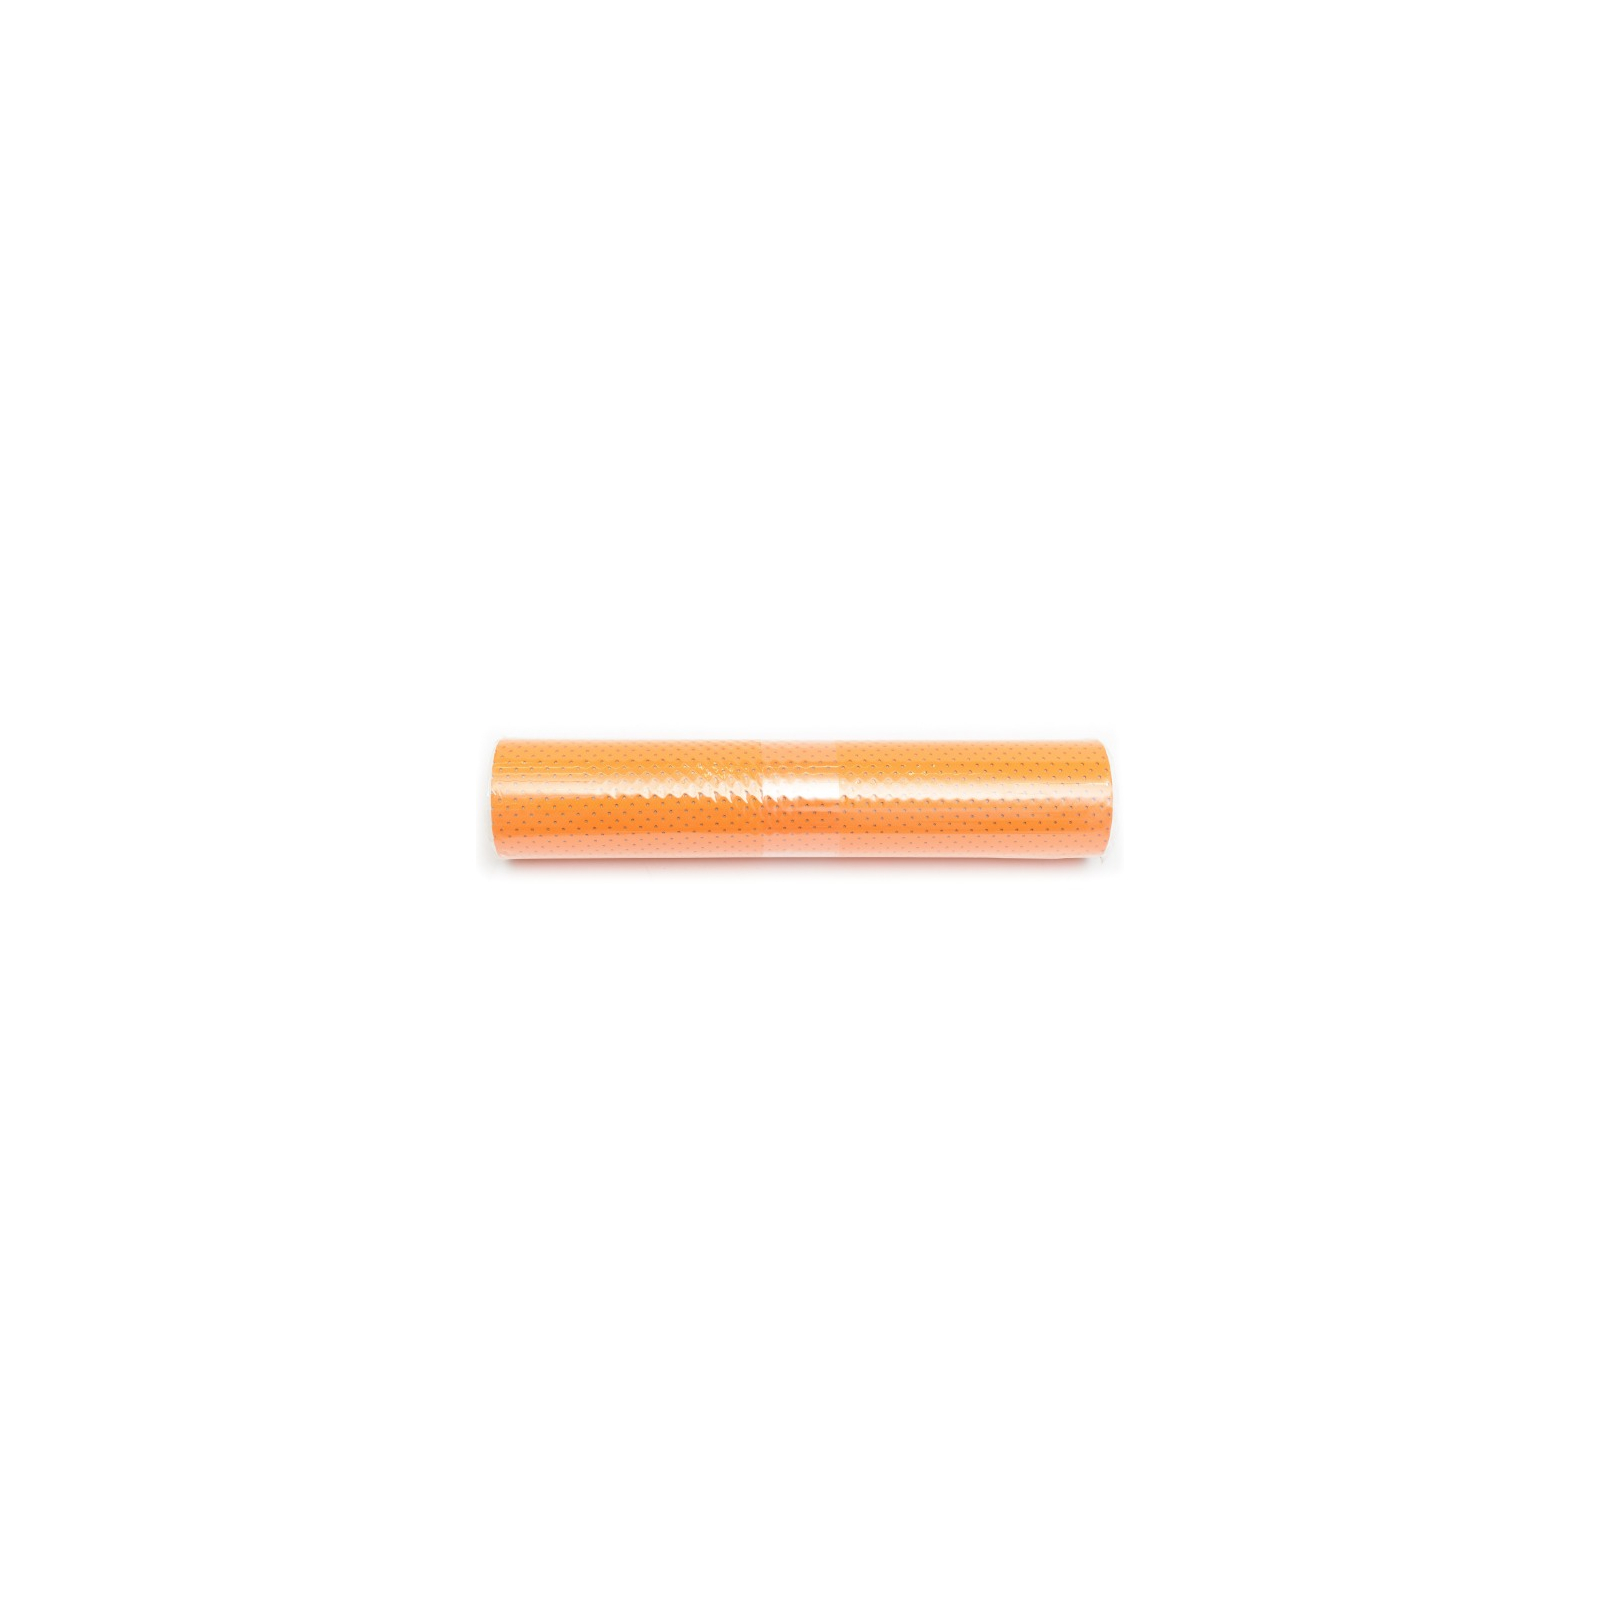 Килимок для фітнесу Ecofit MD9032 двухслойный перфорированныйTPE 1830*610*6мм Orange (К00015292)